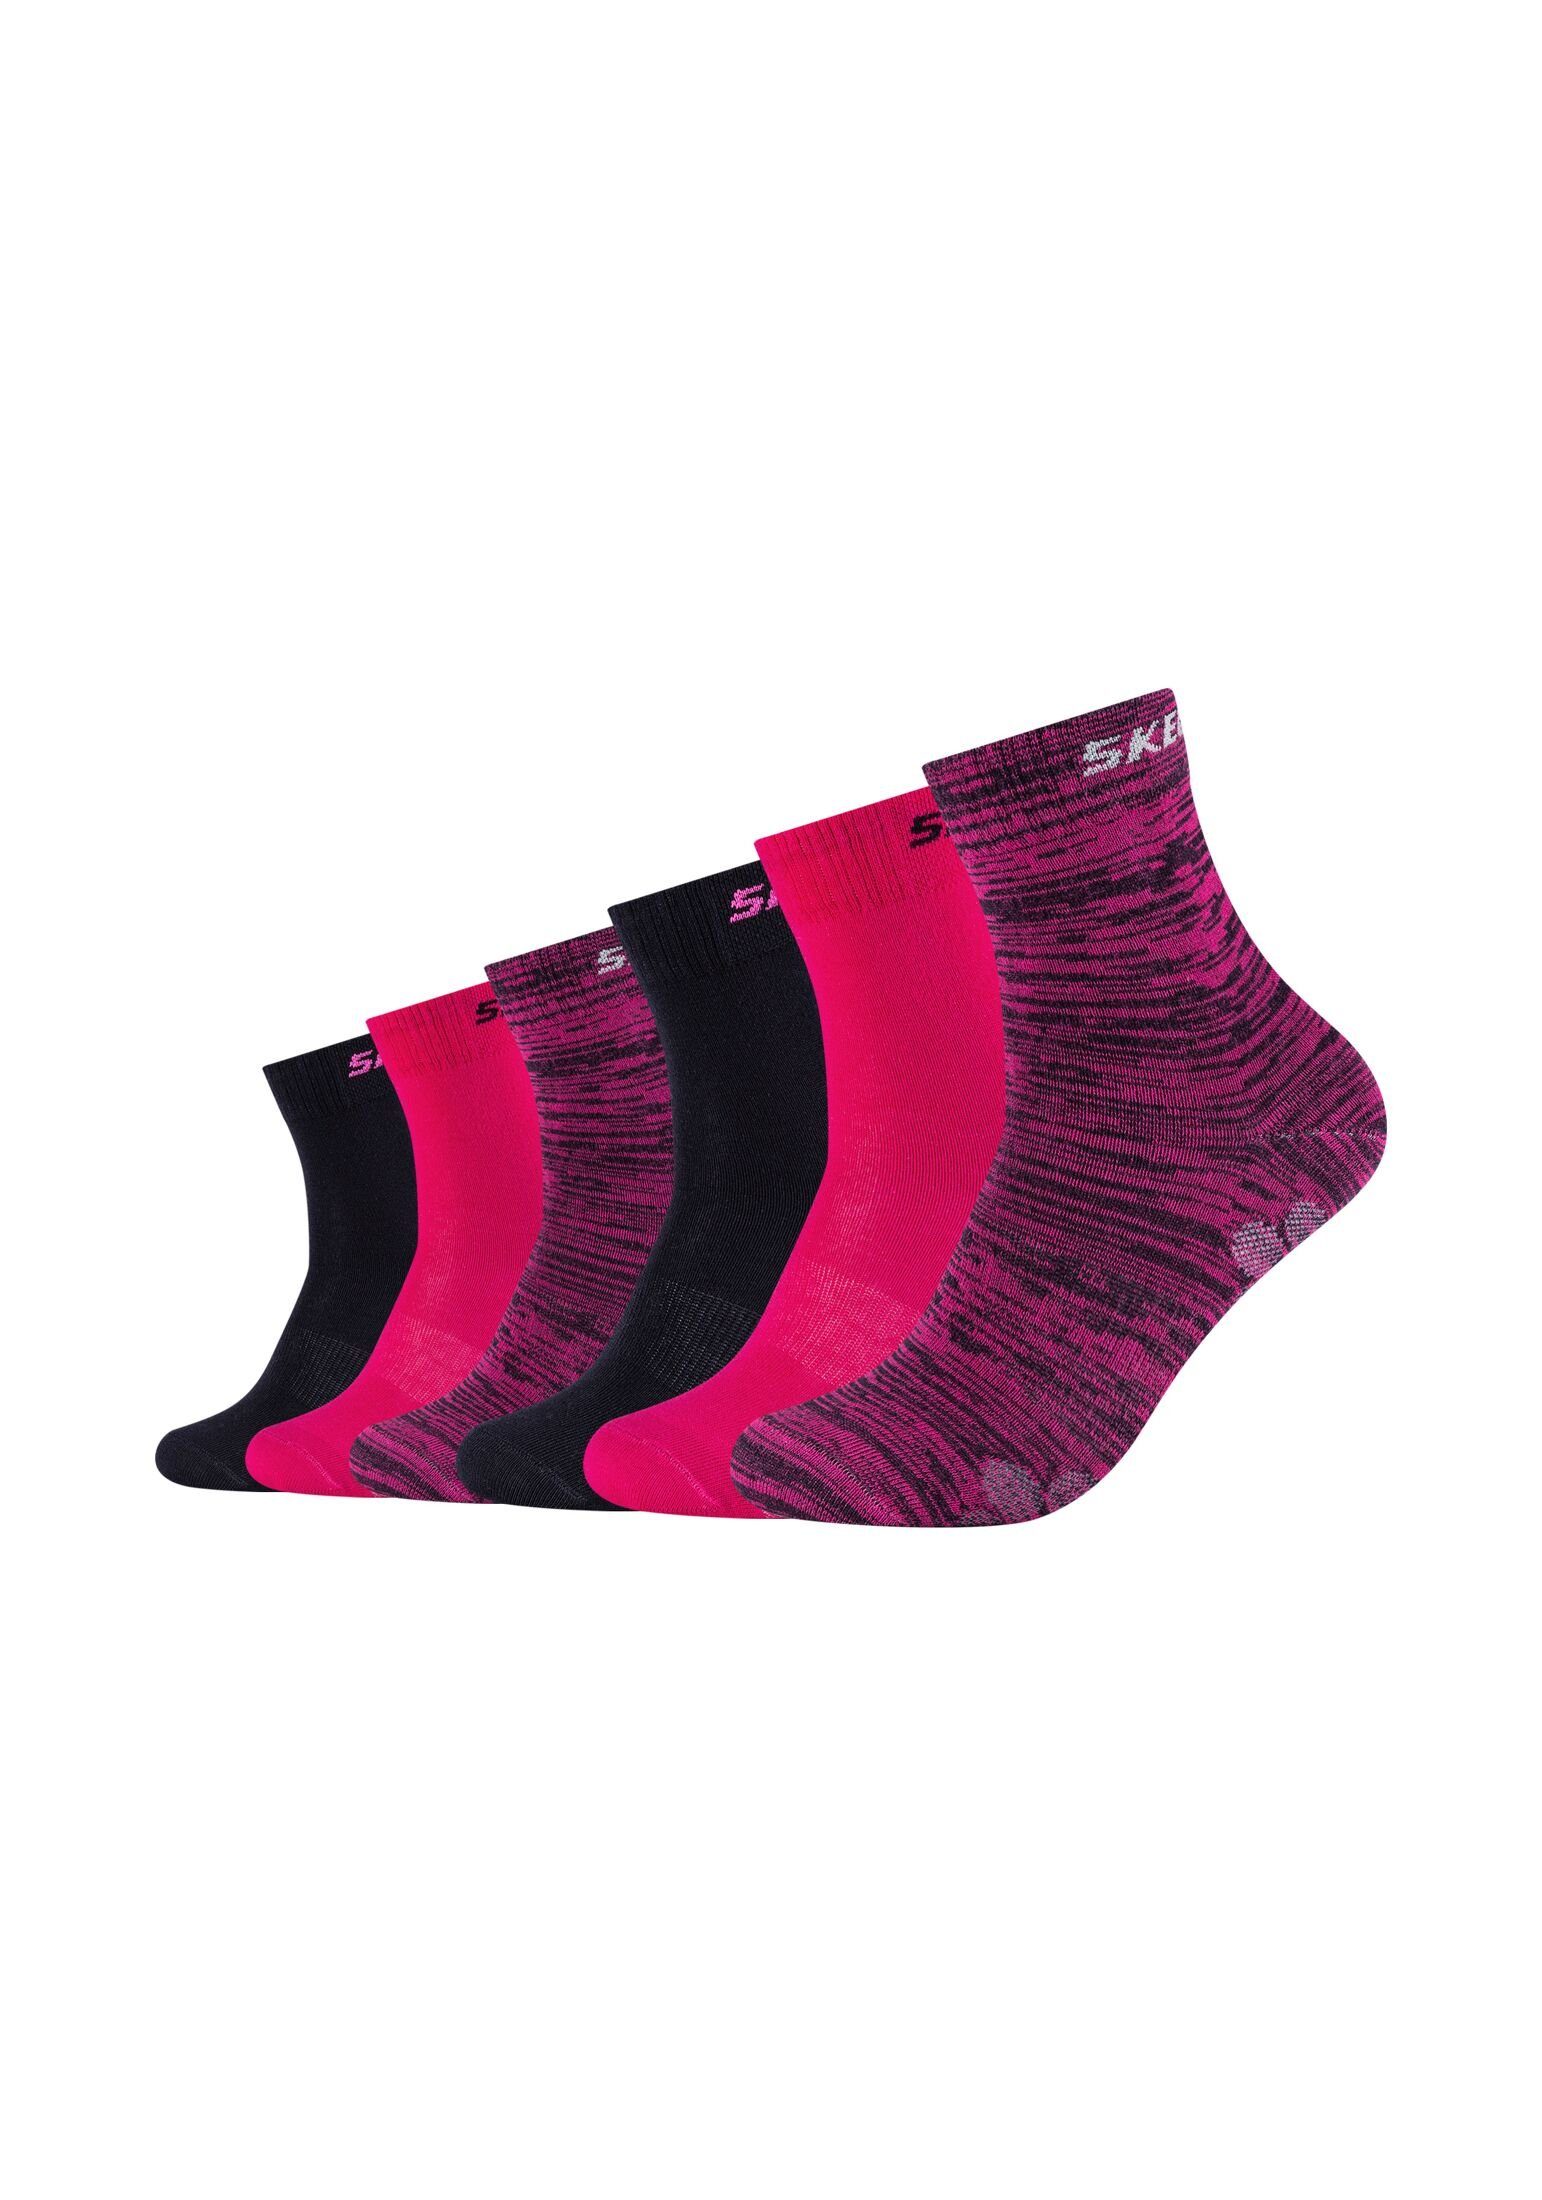 Skechers Socken Socken 6er Pack pink glow mouliné